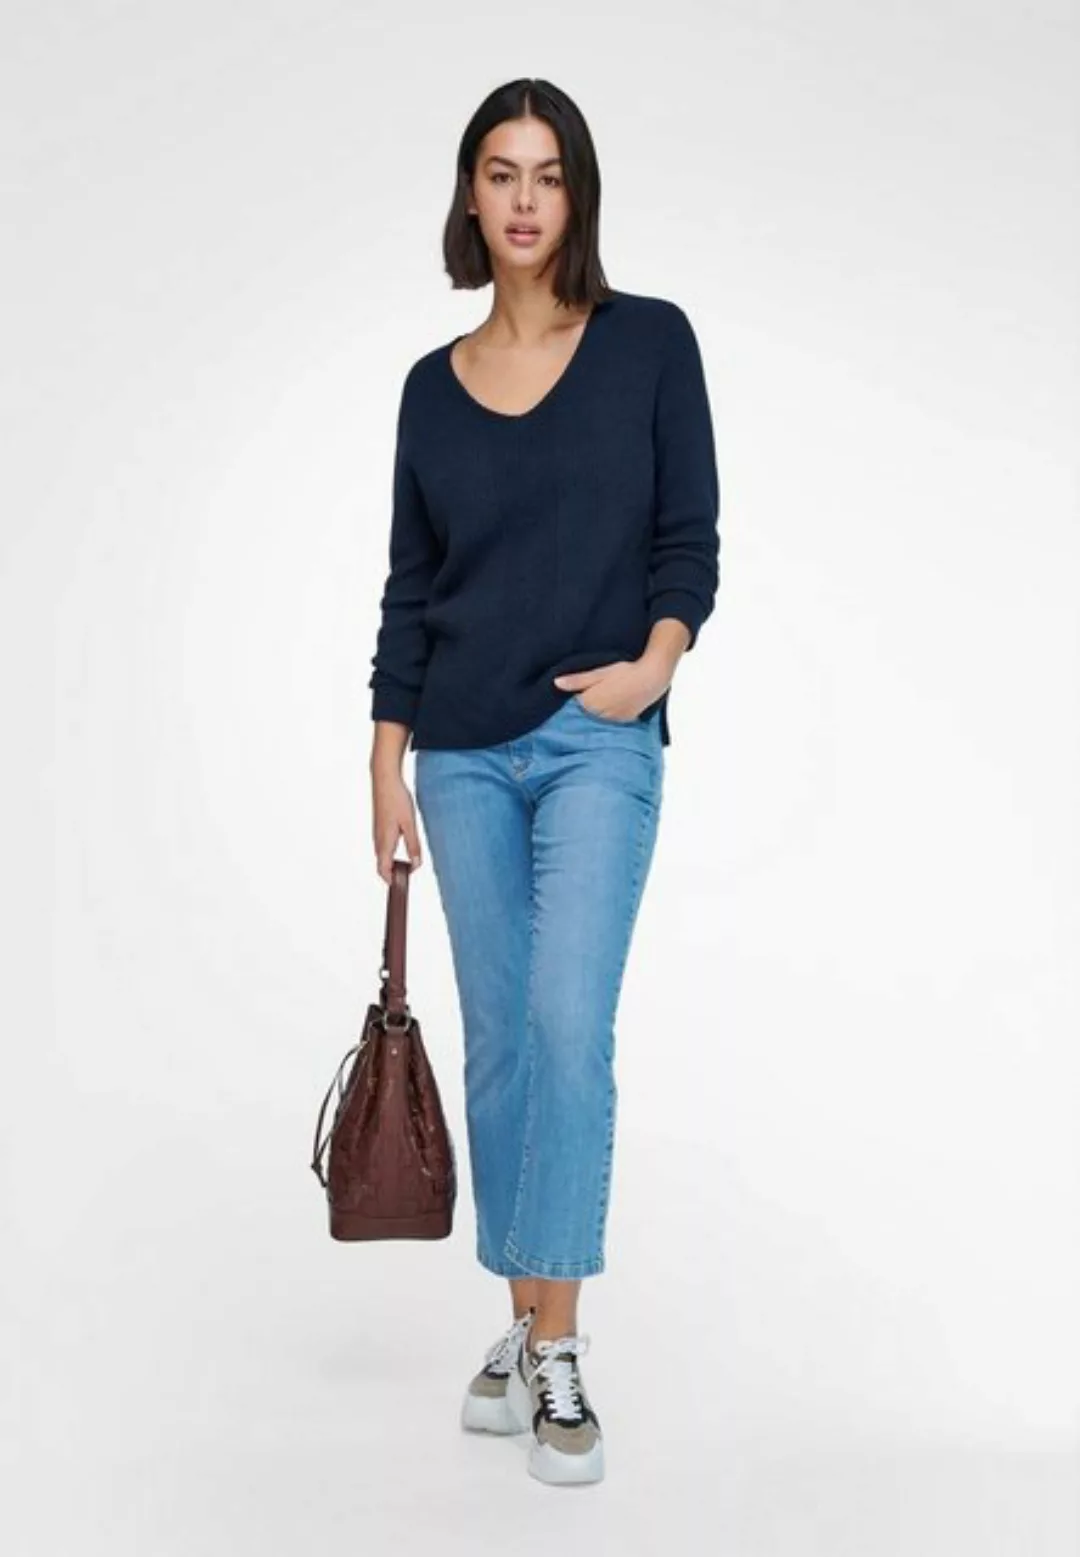 V-Pullover Emilia Lay blau günstig online kaufen